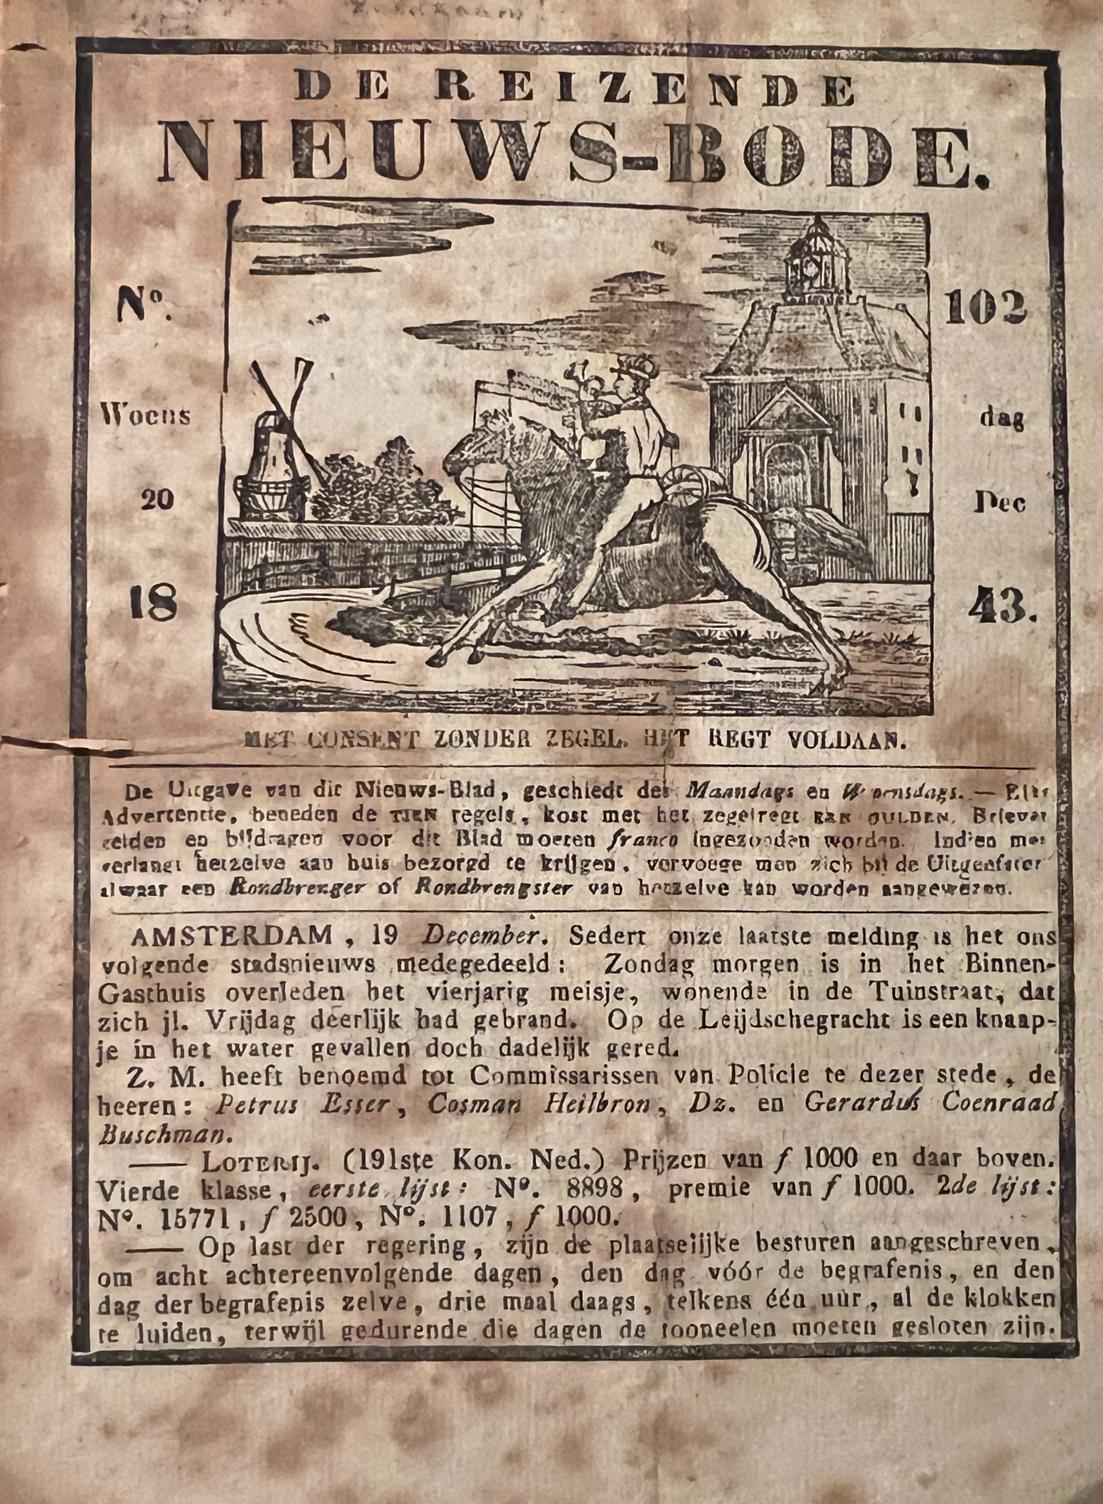 [Pamphlet/Newspaper] - Pamphlet/Newspaper: De reizende Nieuwsbode (nieuws-bode), no 102 Woensdag 20 december 1843, Amsterdam wed Kok, geb. Van Kolm, 4 pp.